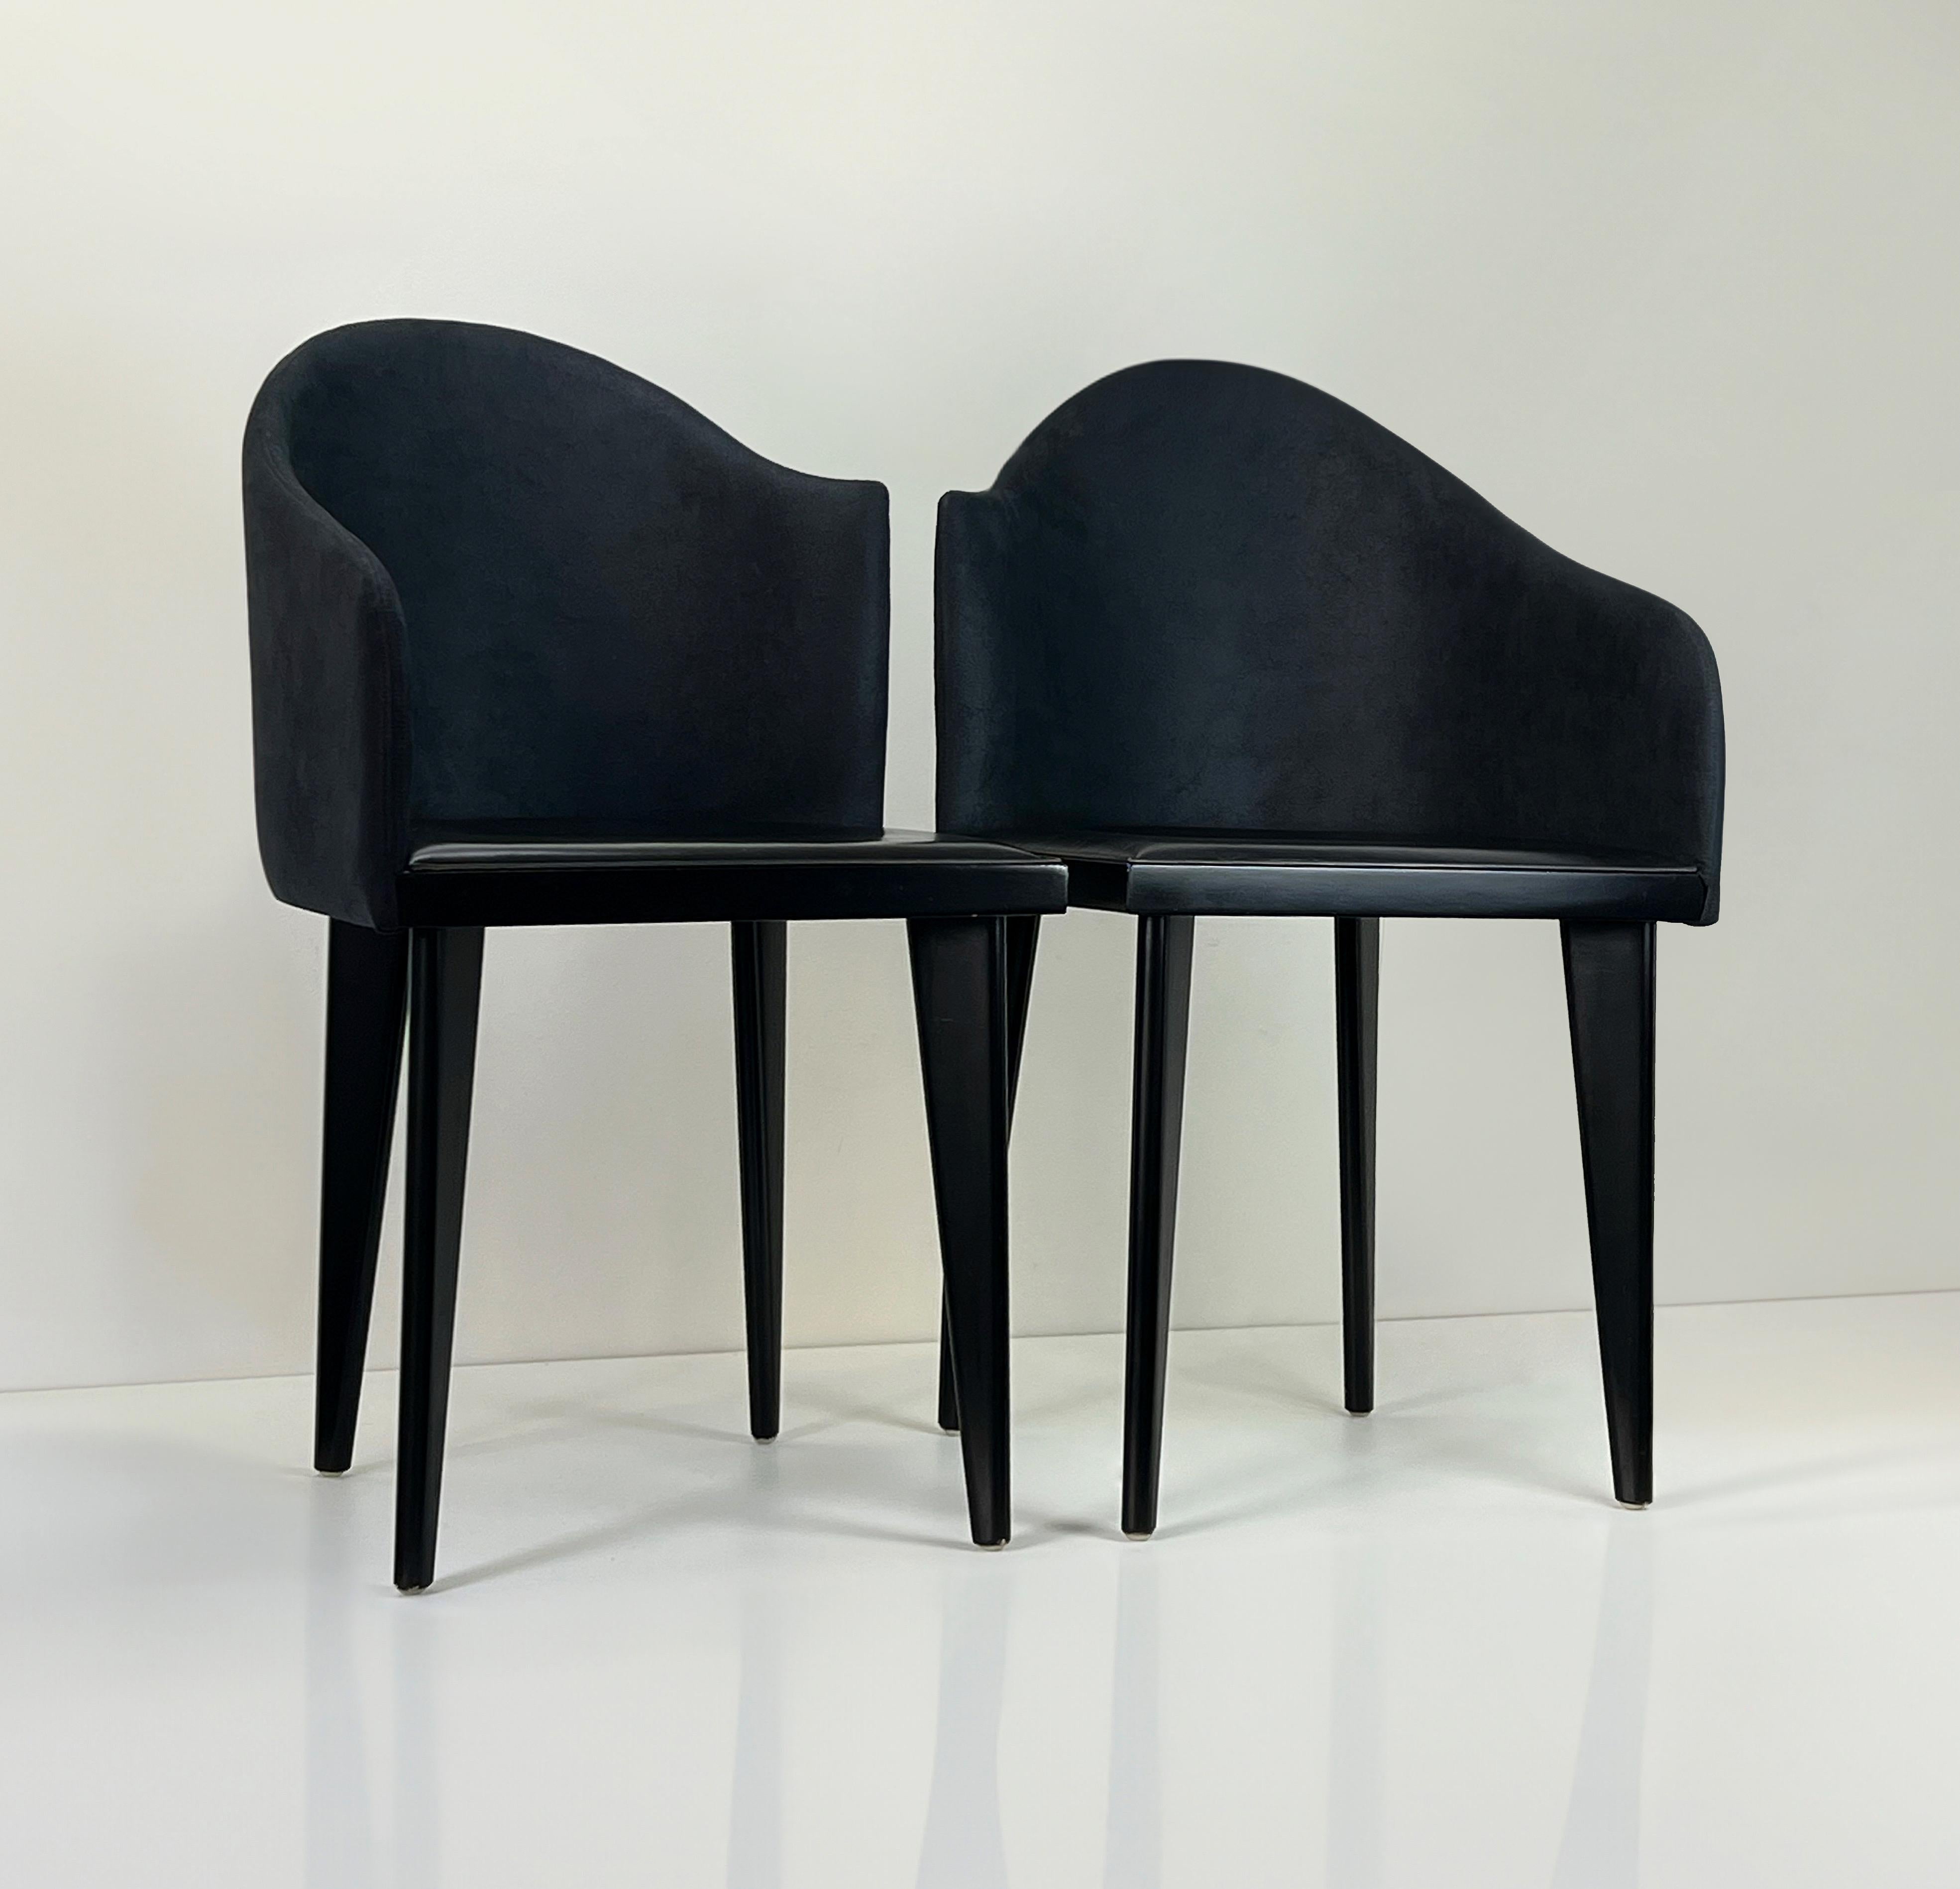 Les chaises Toscana de Saporiti sont réputées pour leur design élégant et leur savoir-faire exceptionnel. Saporiti est une entreprise italienne d'ameublement connue pour ses designs contemporains et de haute qualité, et les chaises Toscana